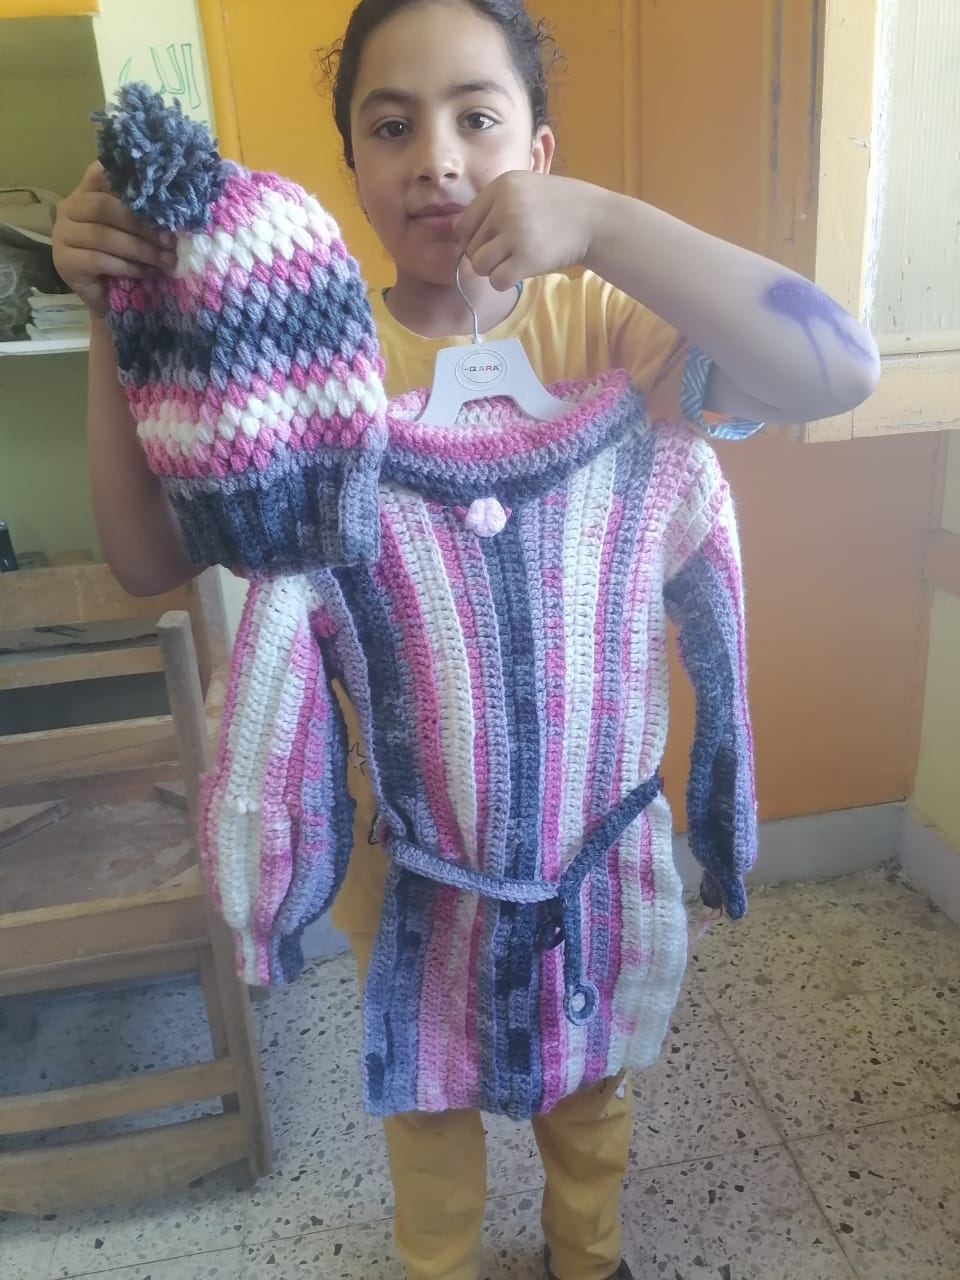 طفلة تمسك بملبس شاركت في تصميمه